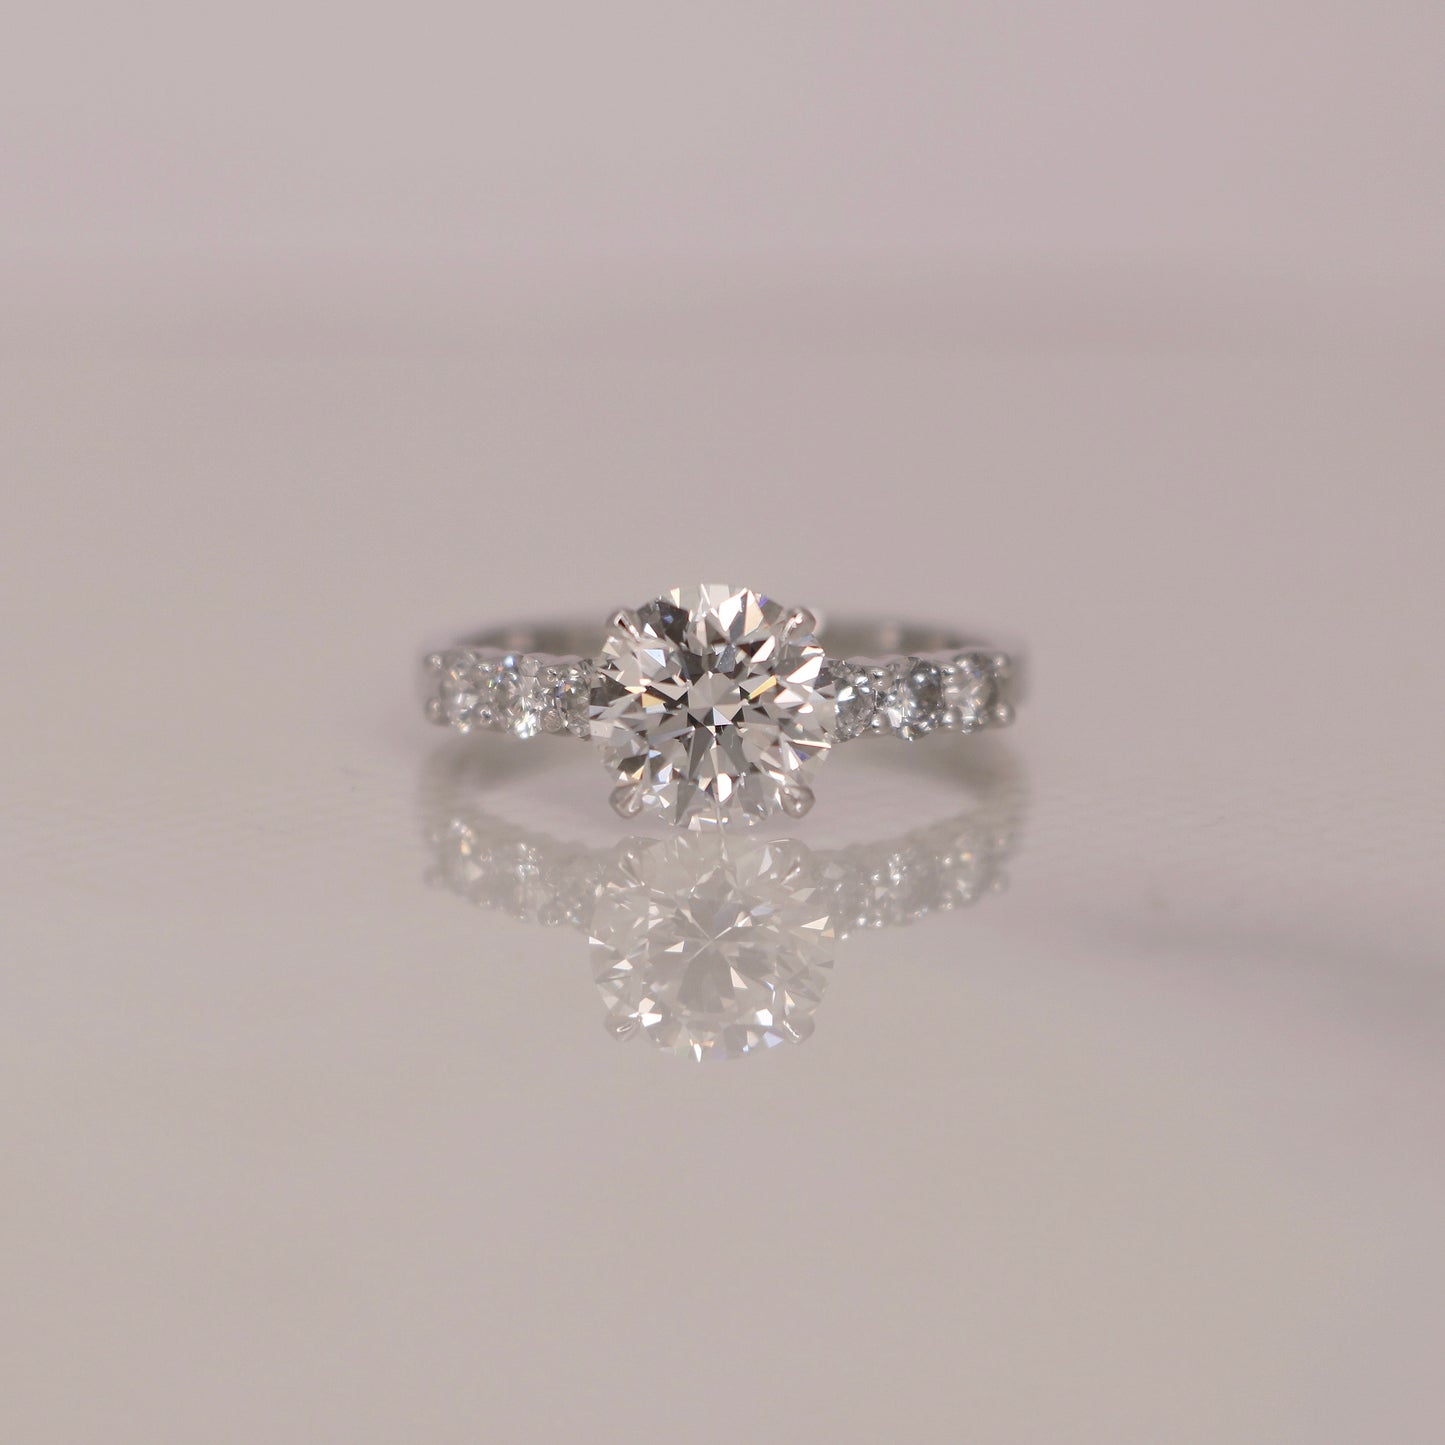 Load image into Gallery viewer, NebularaX Lab Grown Diamond Ring - Fiona Diamonds - Fiona Diamonds
